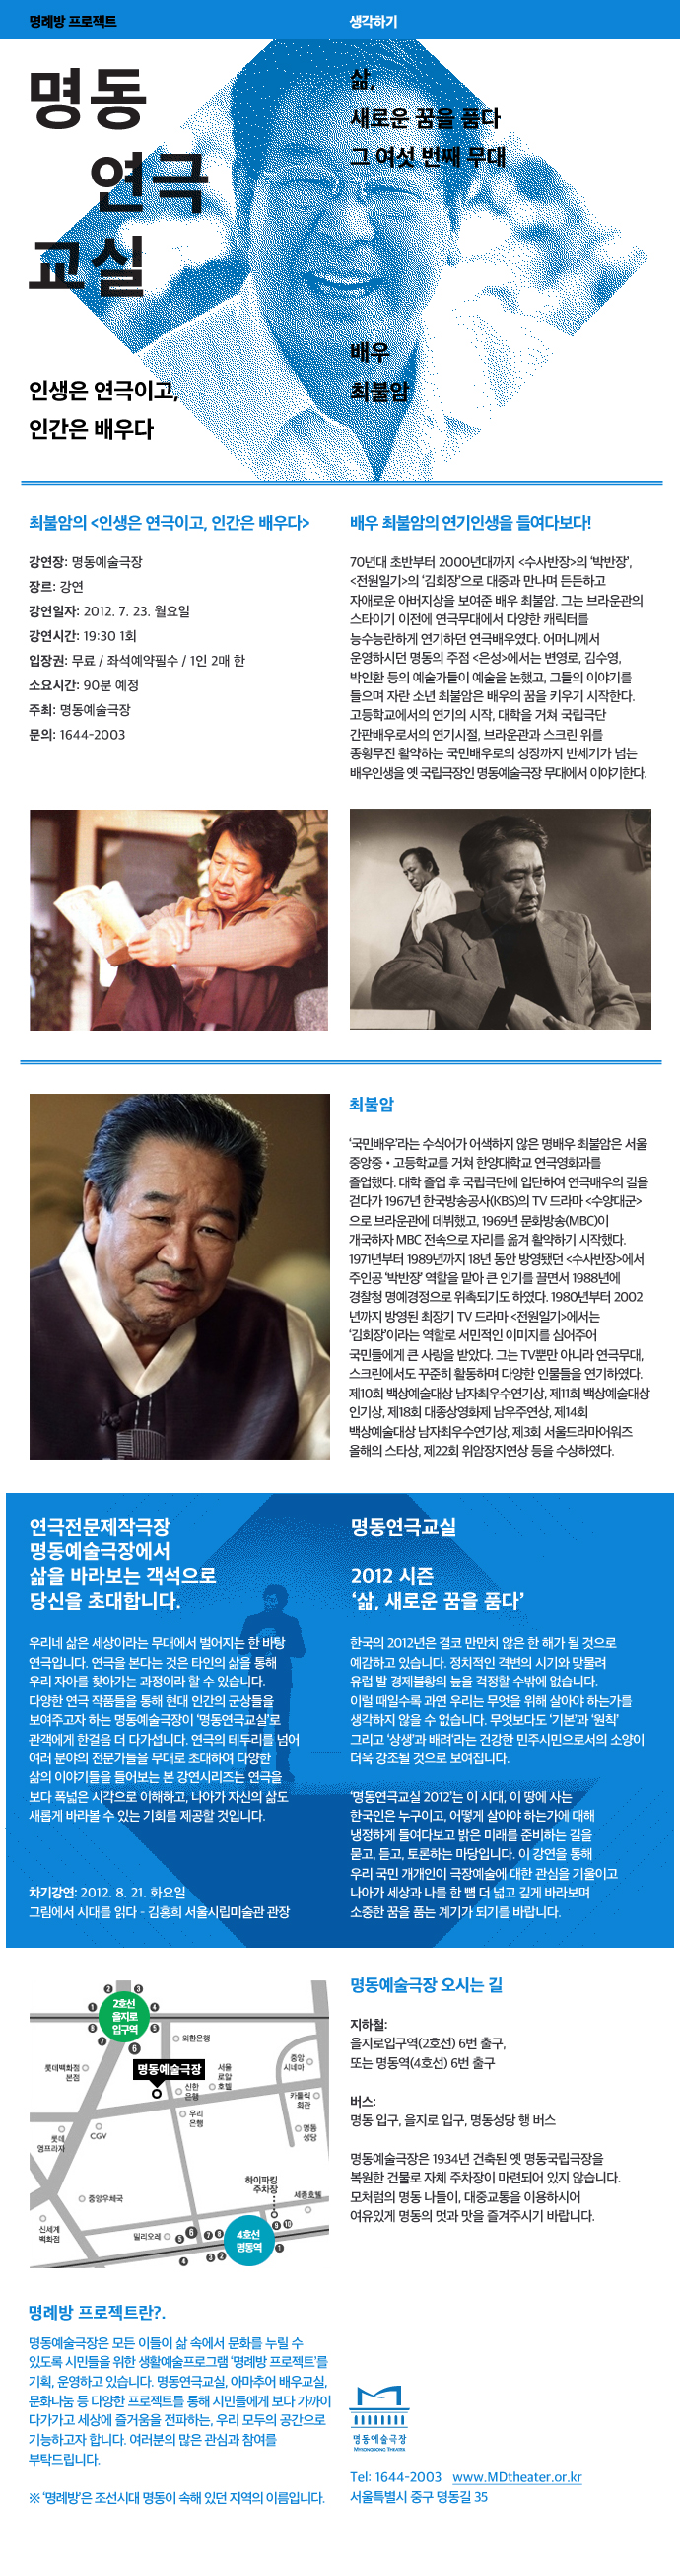 2012 명동연극교실 - 배우 최불암 포스터